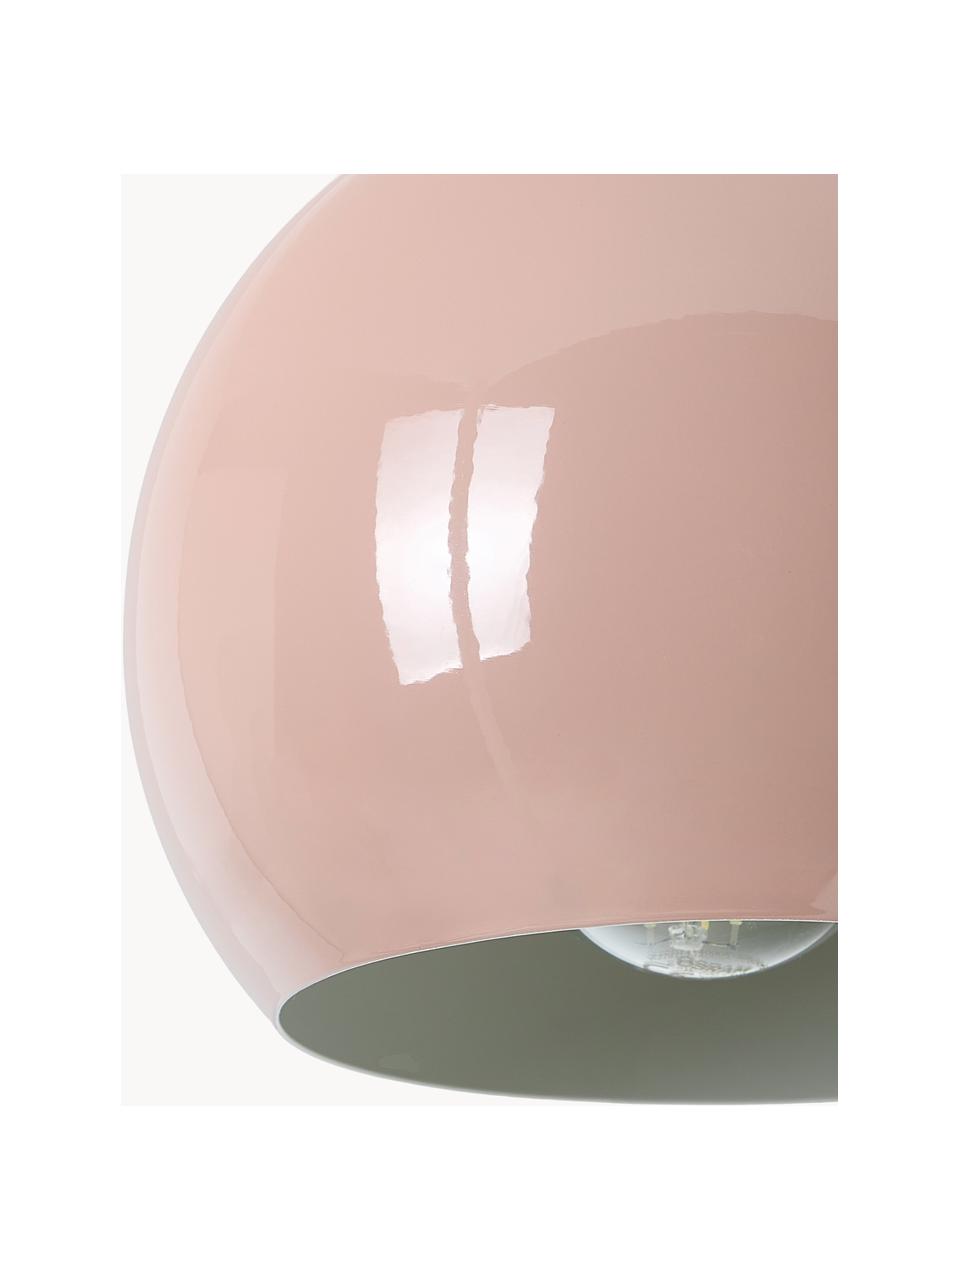 Petite suspension boule Ball, Rose pâle, Ø 18 x haut. 16 cm